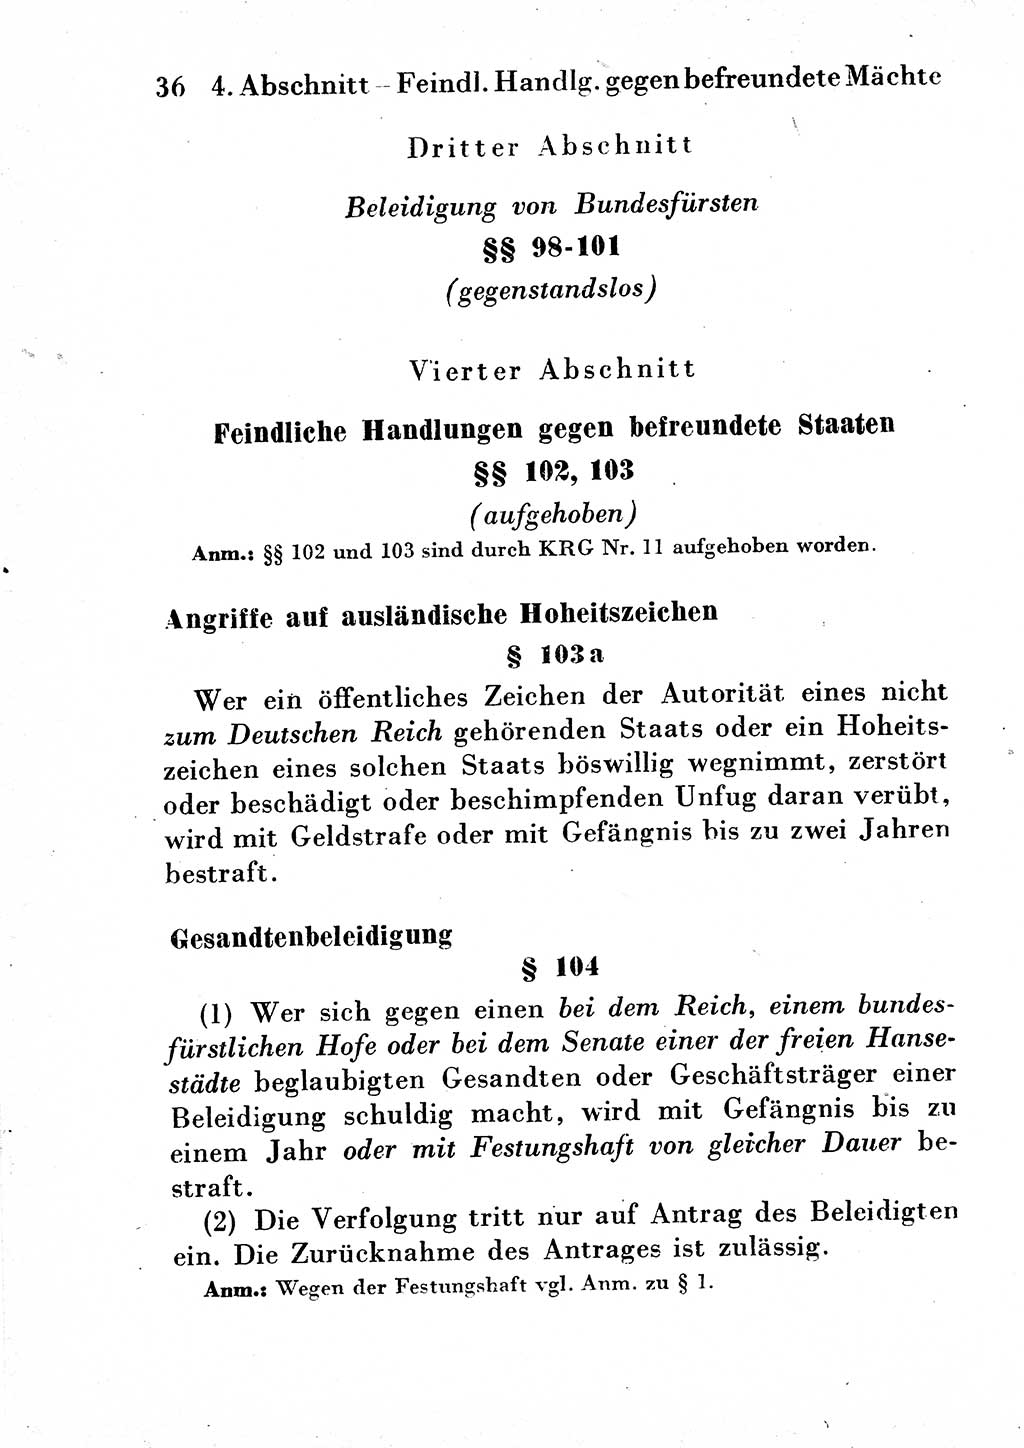 Strafgesetzbuch (StGB) und andere Strafgesetze [Deutsche Demokratische Republik (DDR)] 1954, Seite 36 (StGB Strafges. DDR 1954, S. 36)